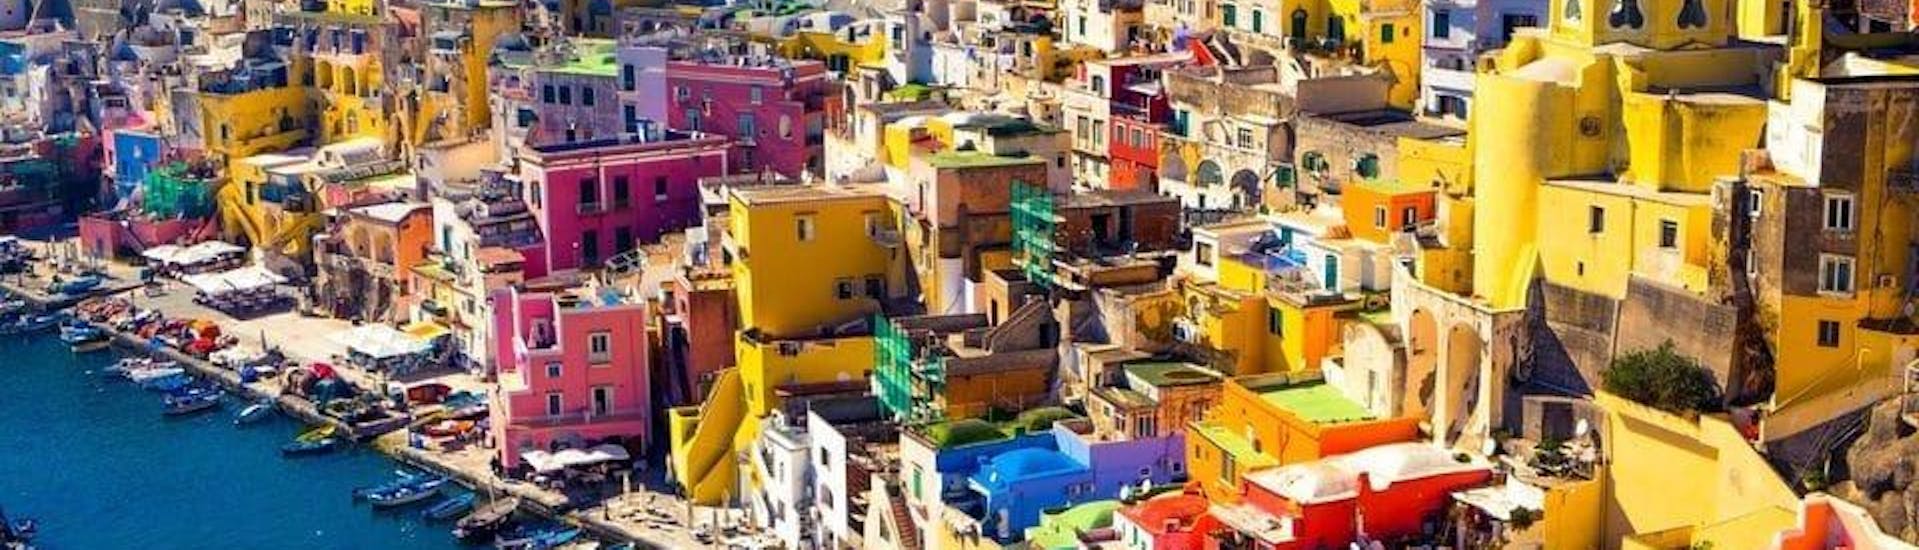 Ces petites maisons colorées peuvent être admirées lors de l'excursion en bateau de Sorrento à Ischia et Procida.